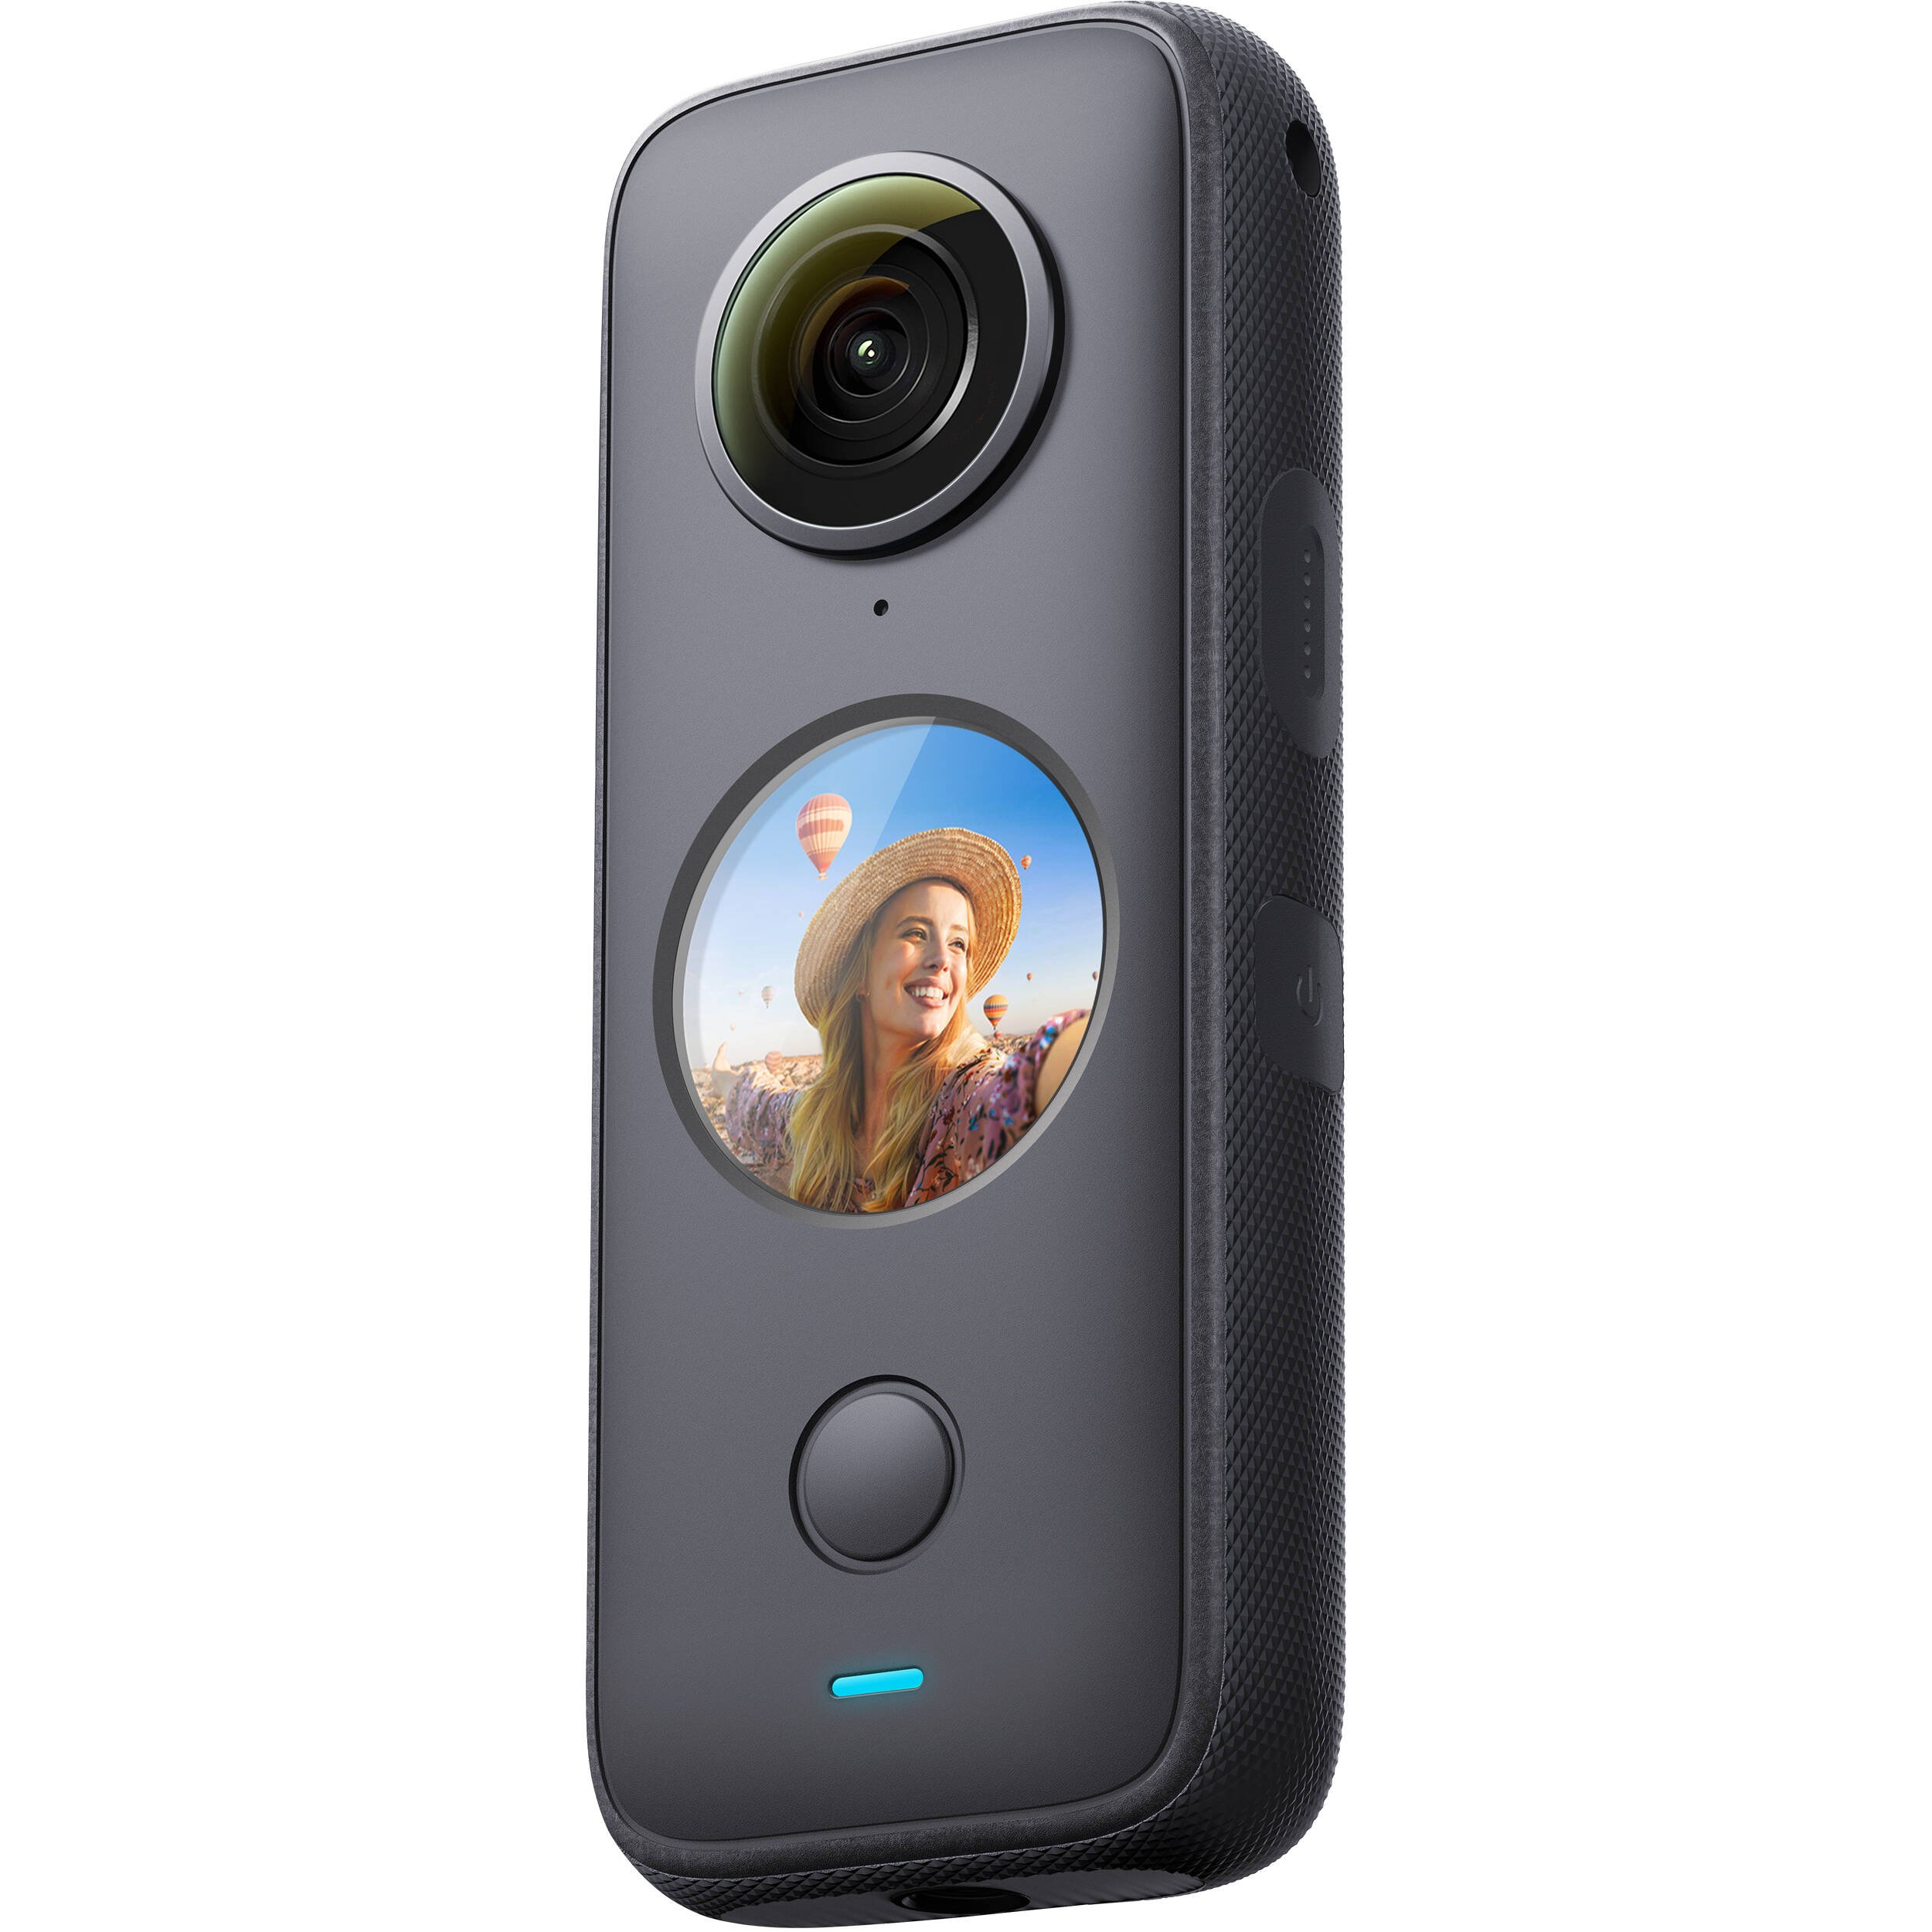 Máy ảnh 360 độ Insta360 One X2 cung cấp chất lượng hình ảnh với chất lượng 5.7K